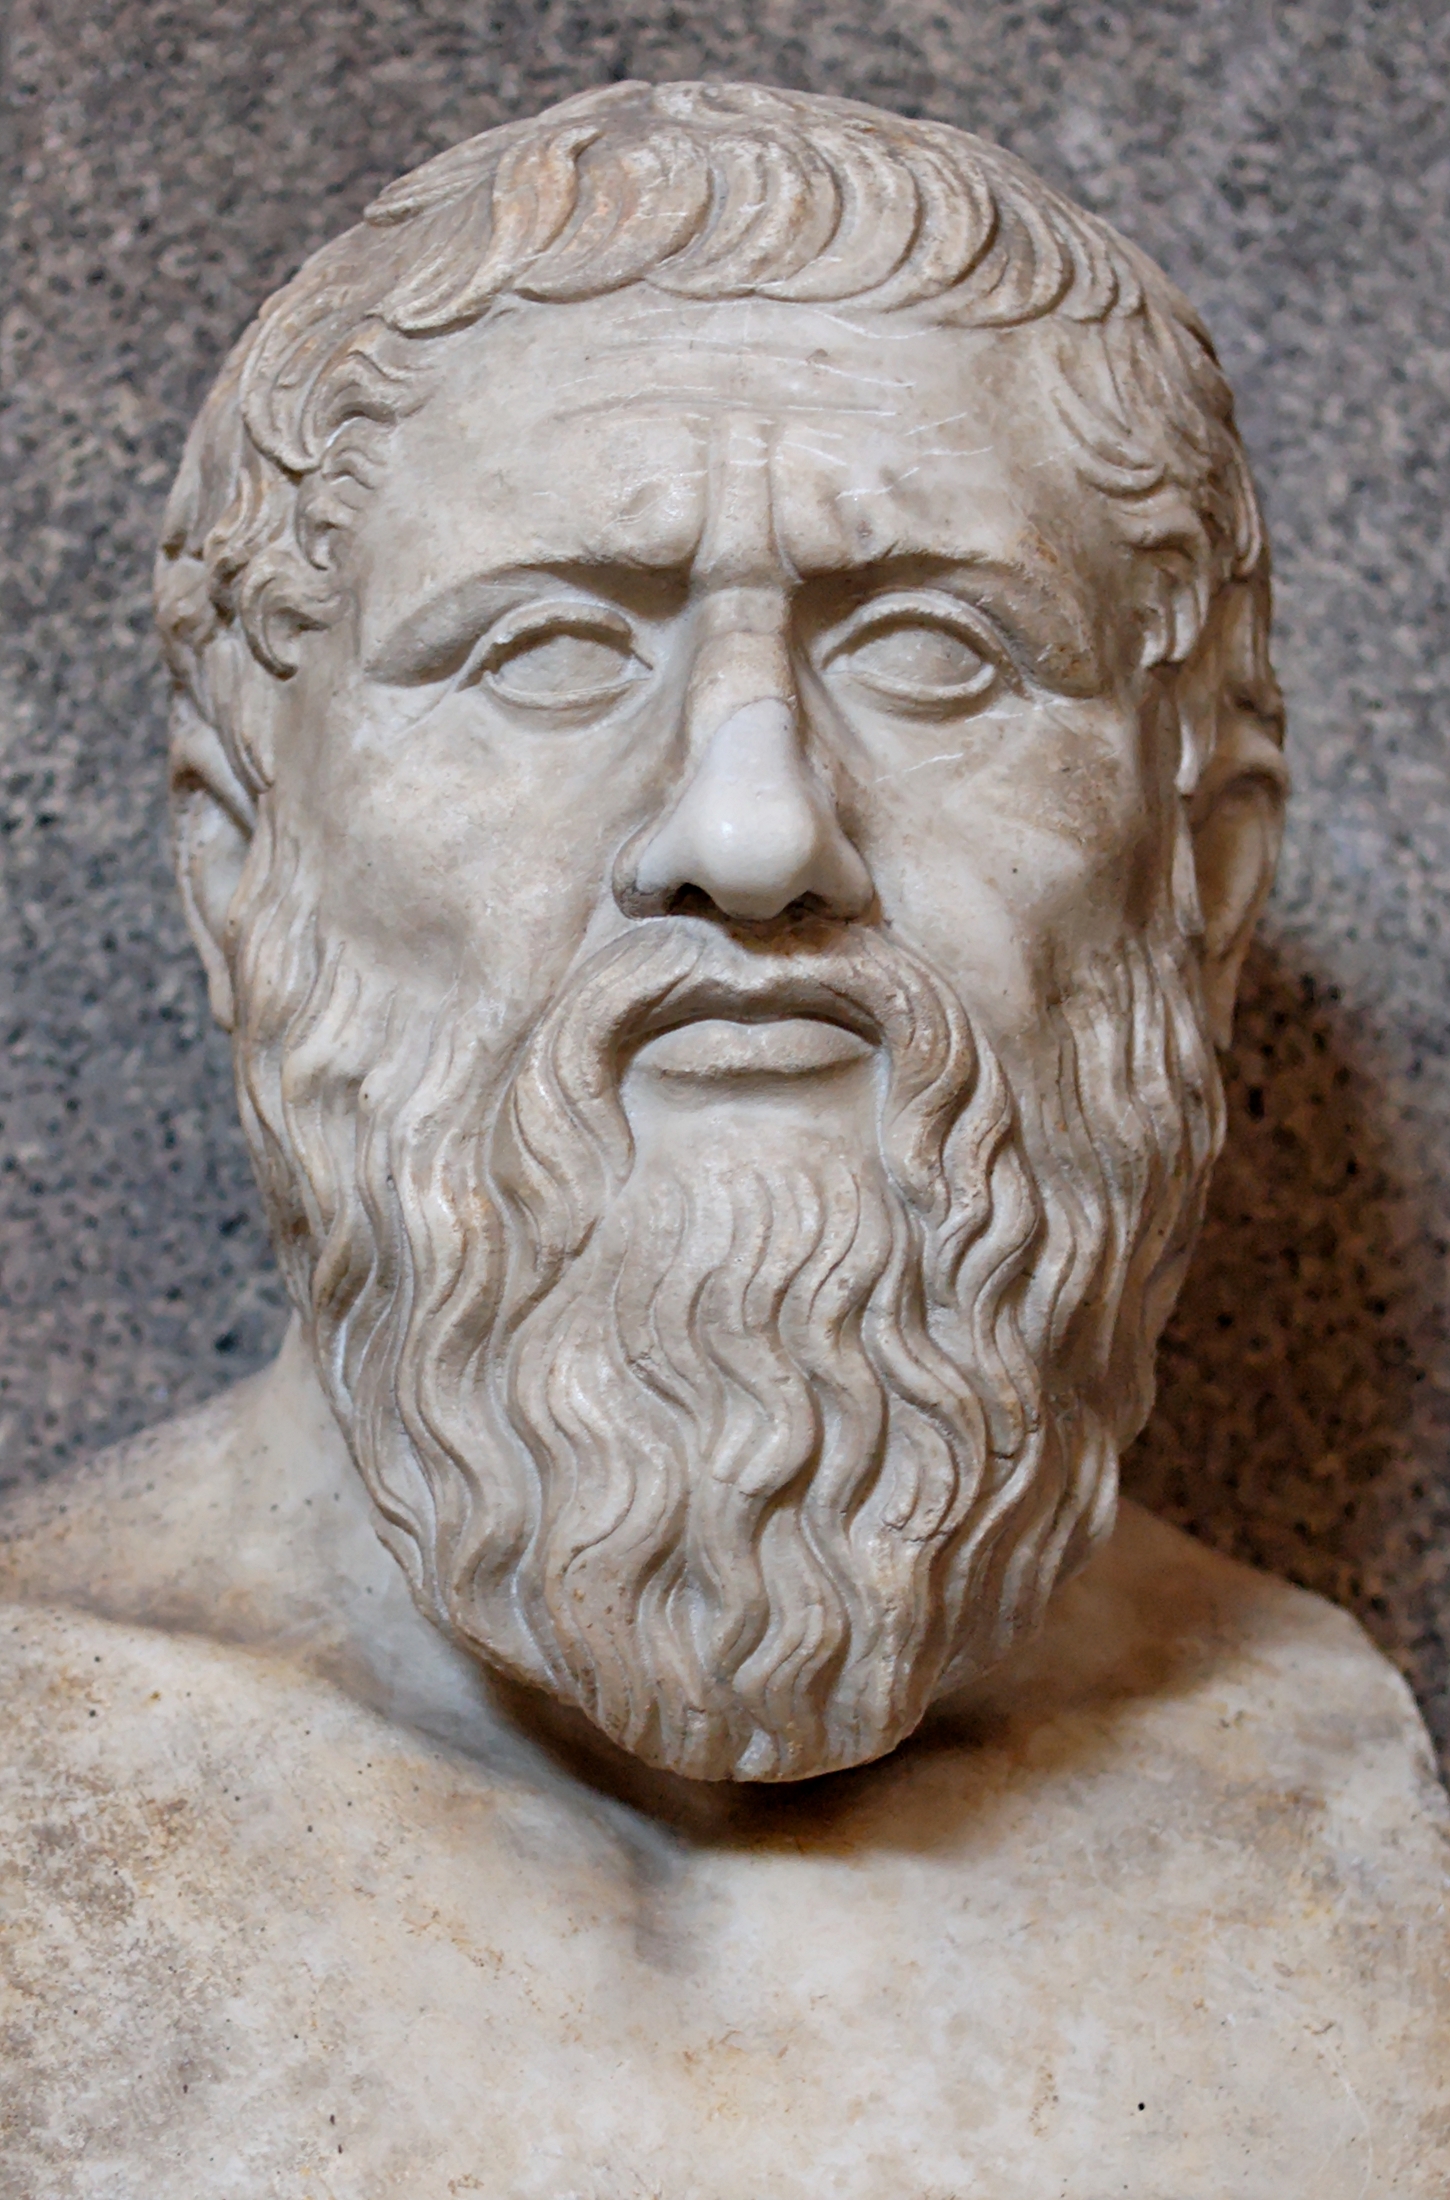 Plato and Thrasymachus